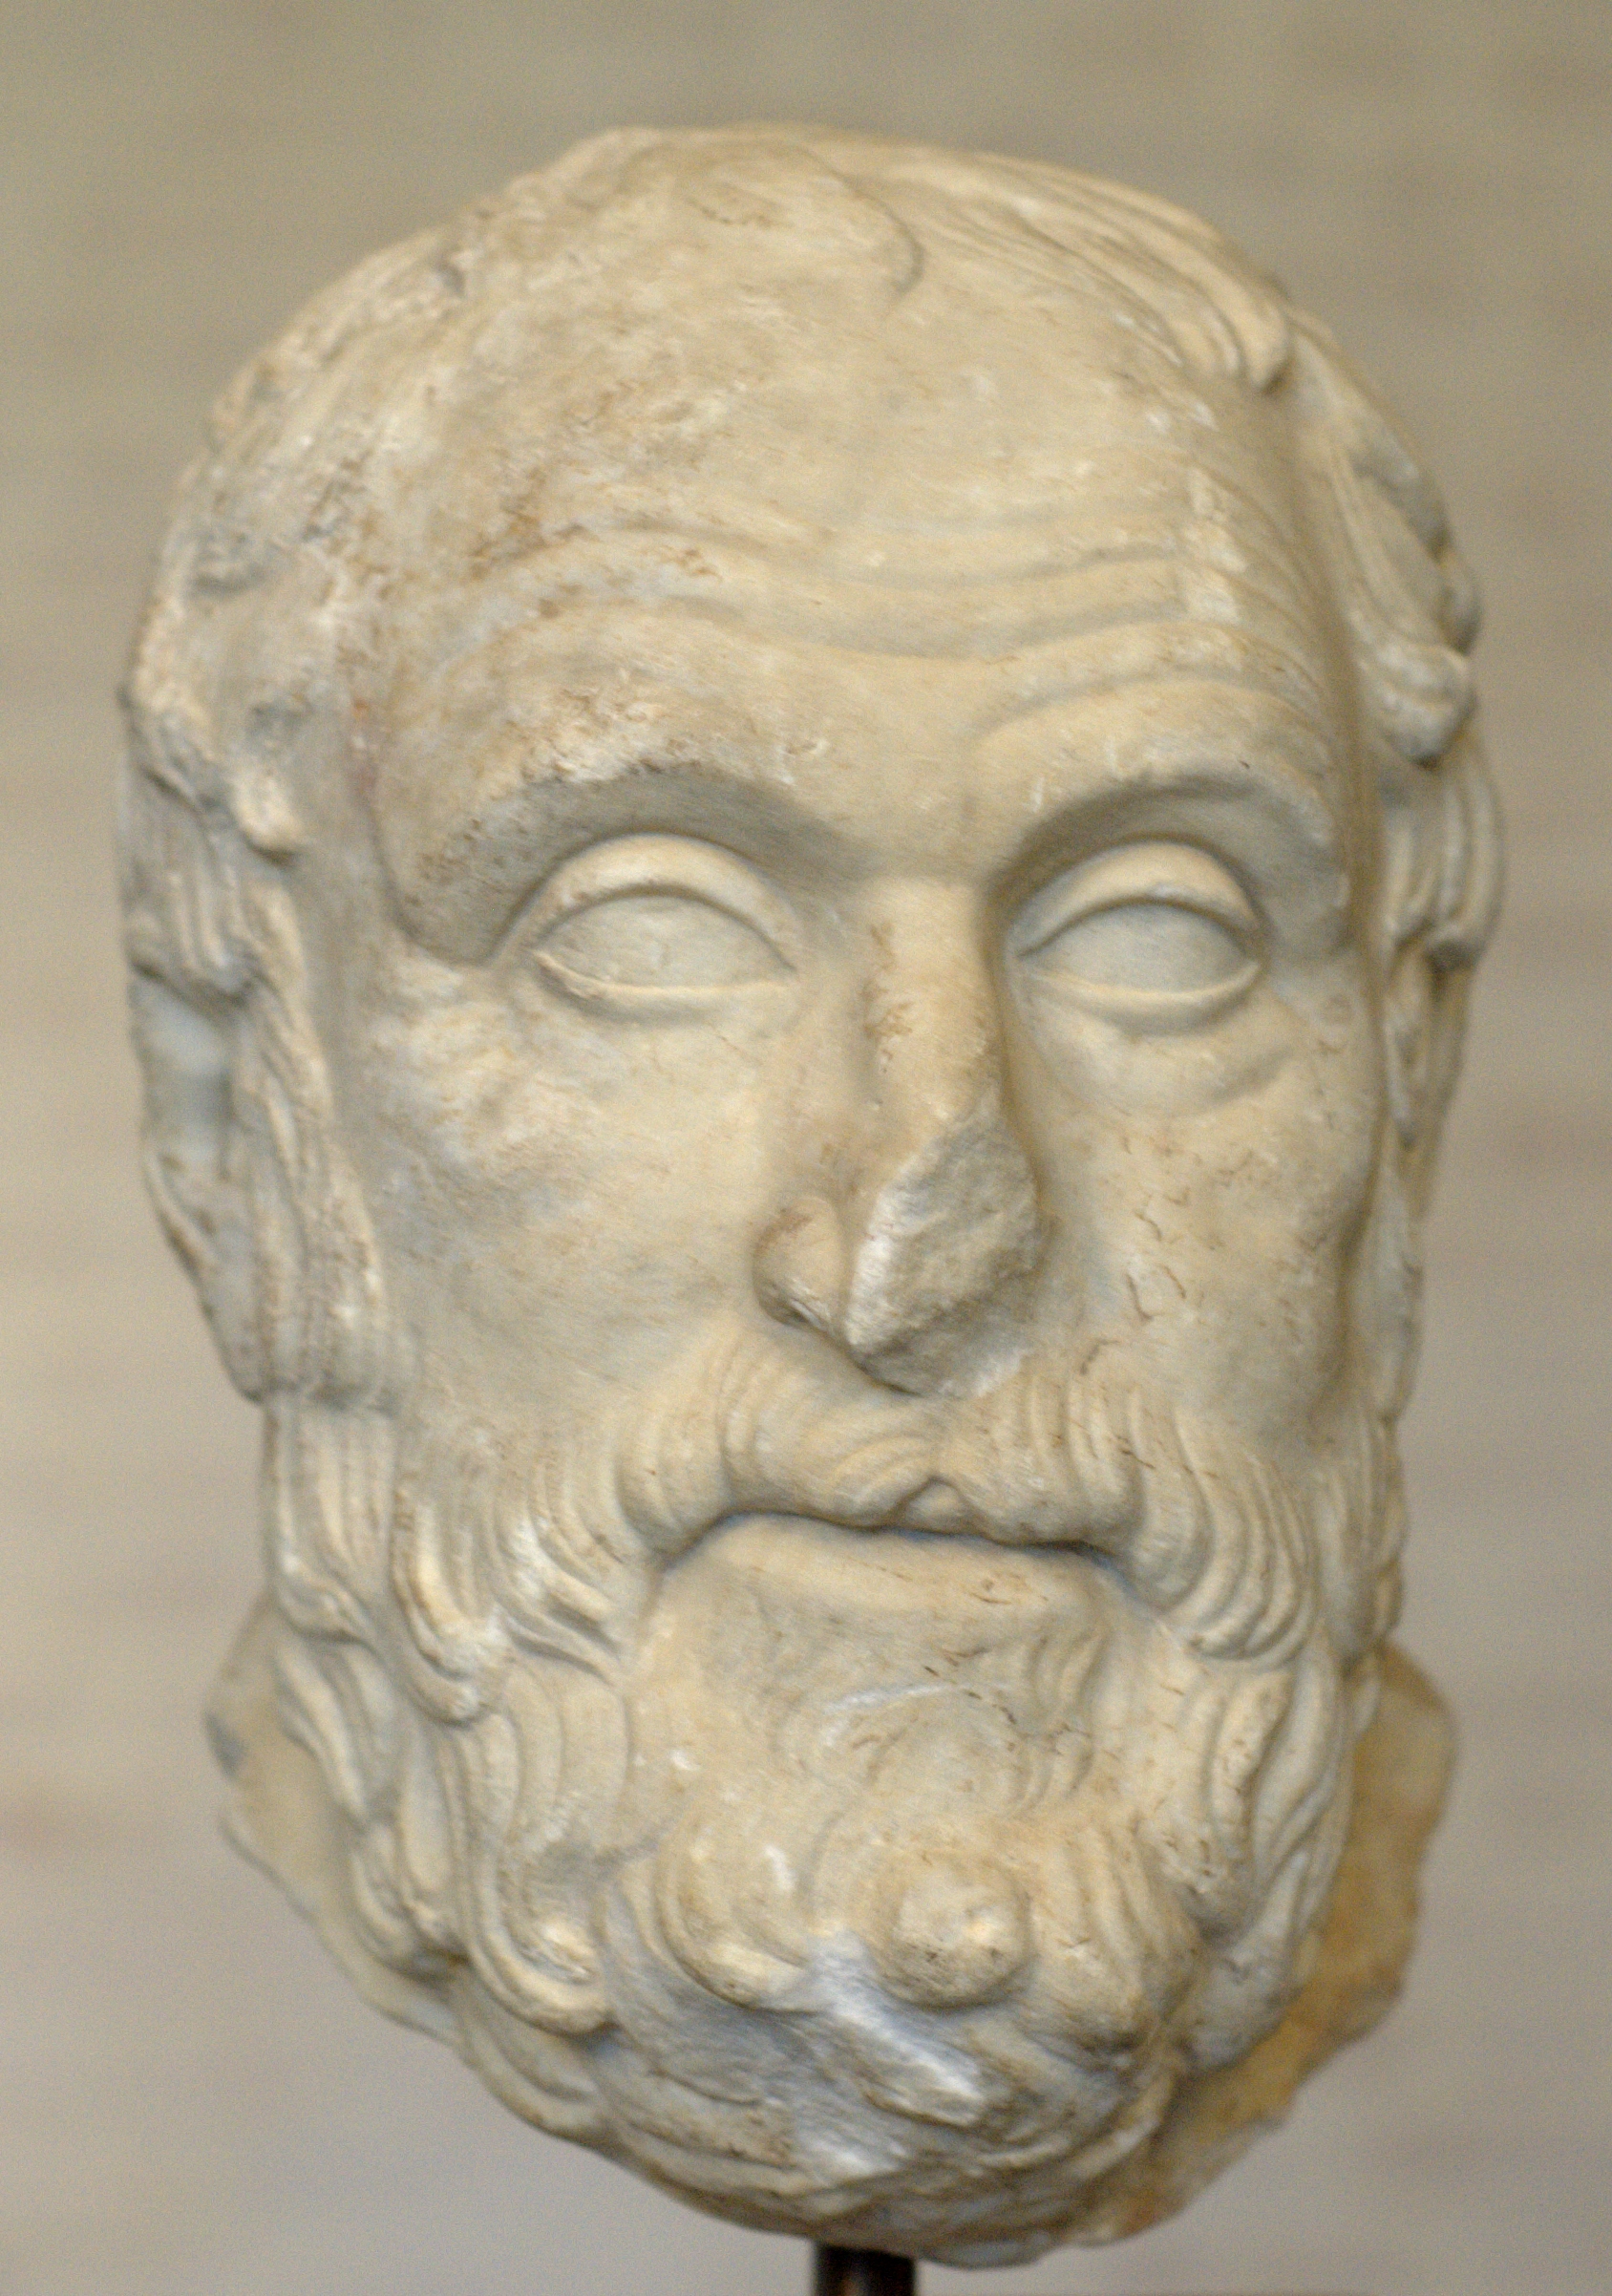 Karneadés, římská kopie sochy z athénské agory. Glyptothek Munich. Kredit: Bibi Saint-Pol, Wikimedia Commons.